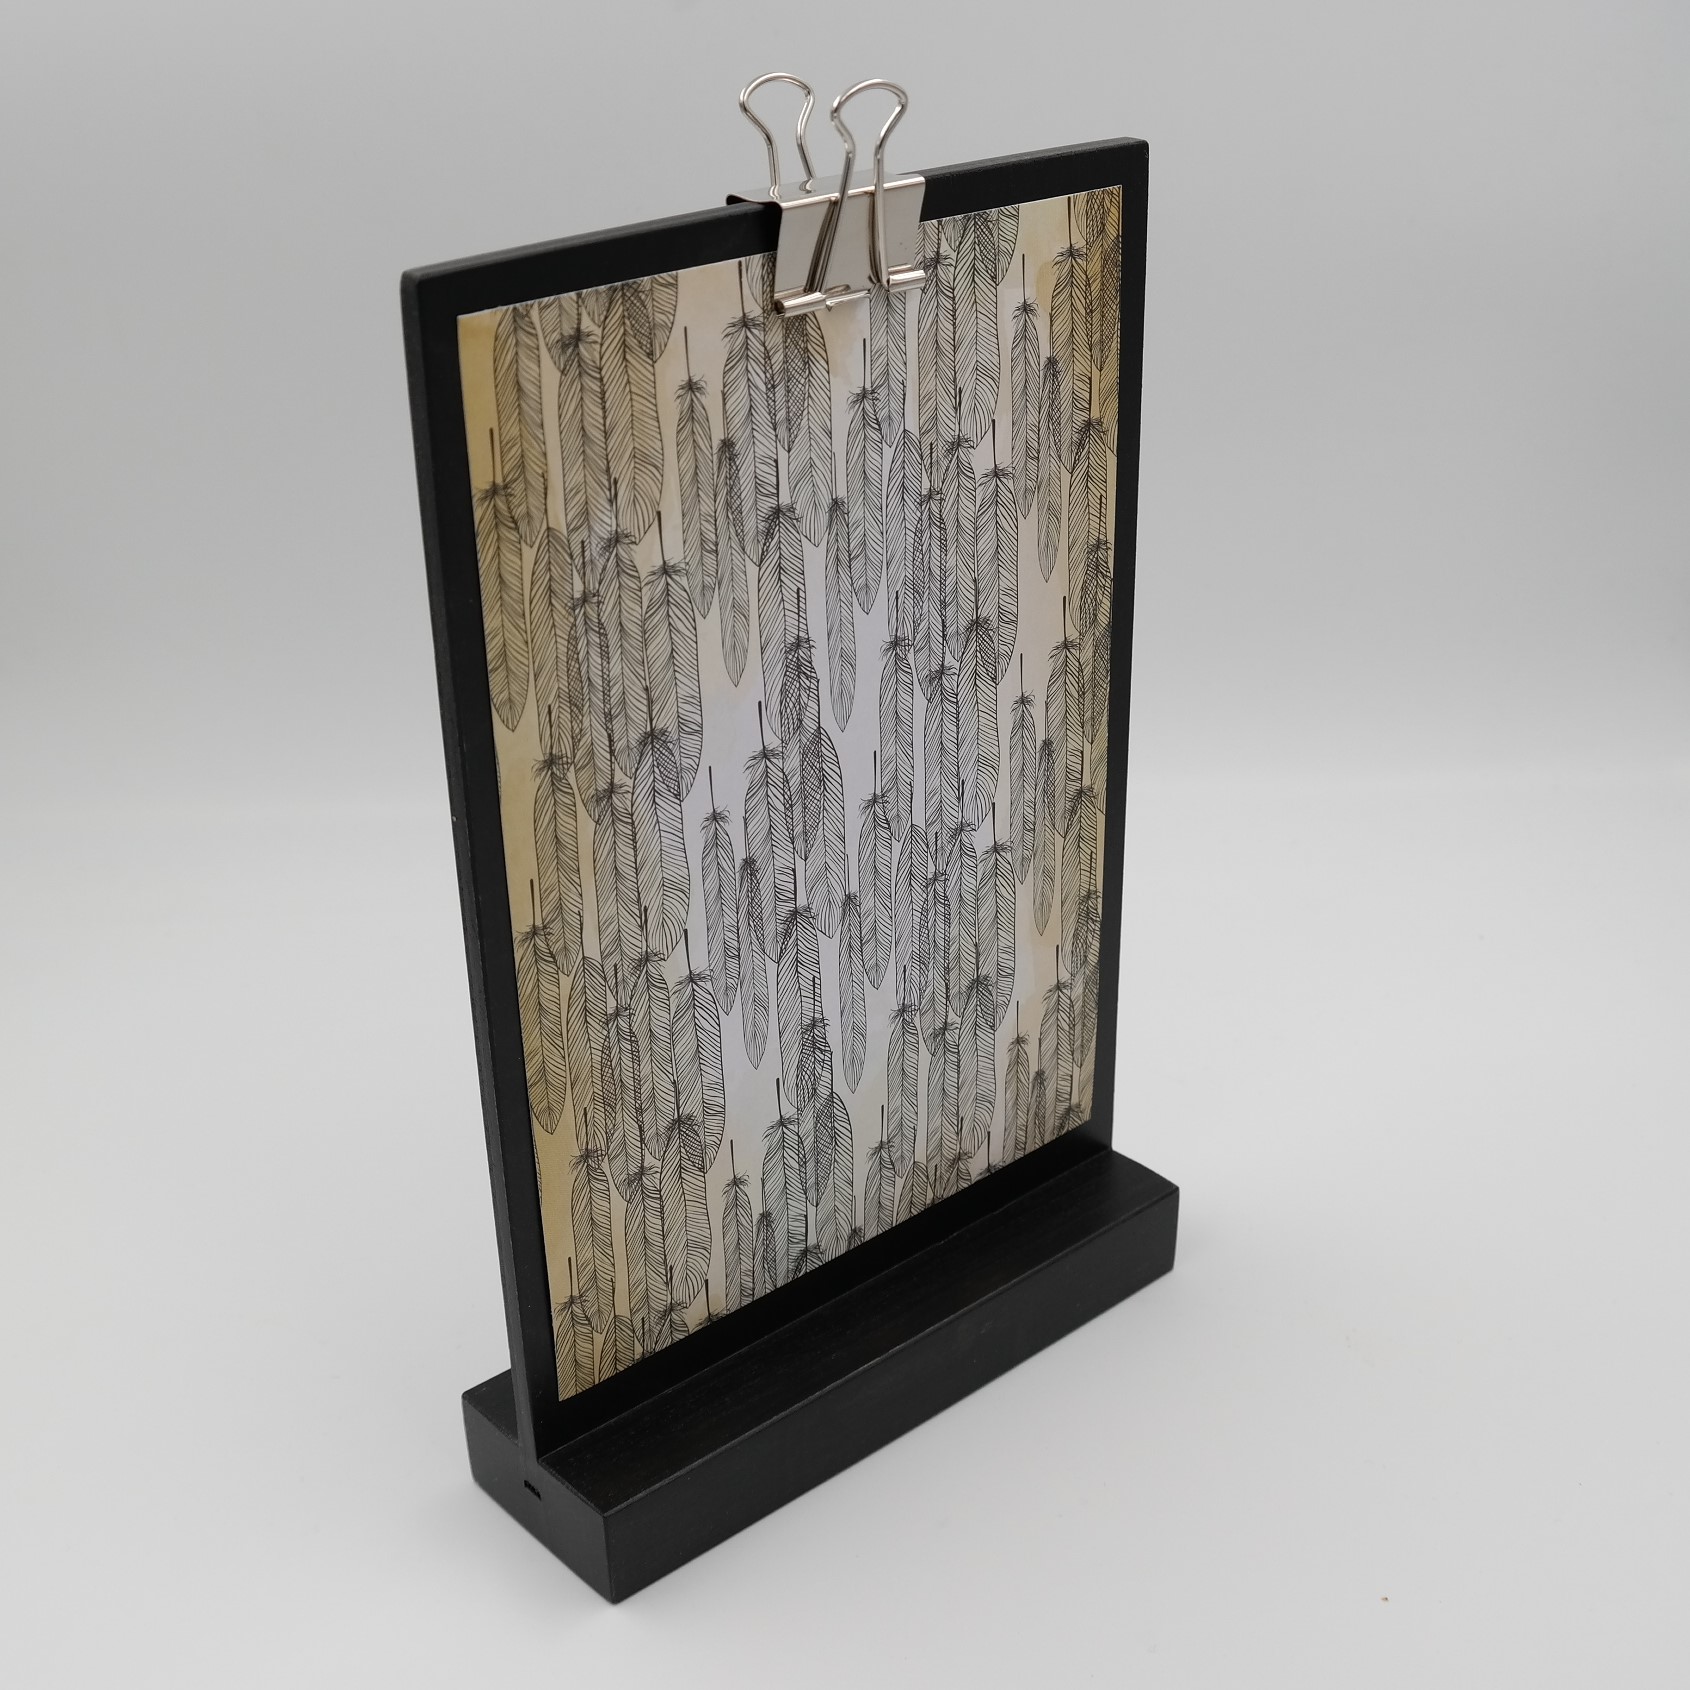 Holz hält - Schreinerei Schulz - A5 Display / Halter / Klemmbrett aus  Buchenholz, schwarz gebeizt und lackiert